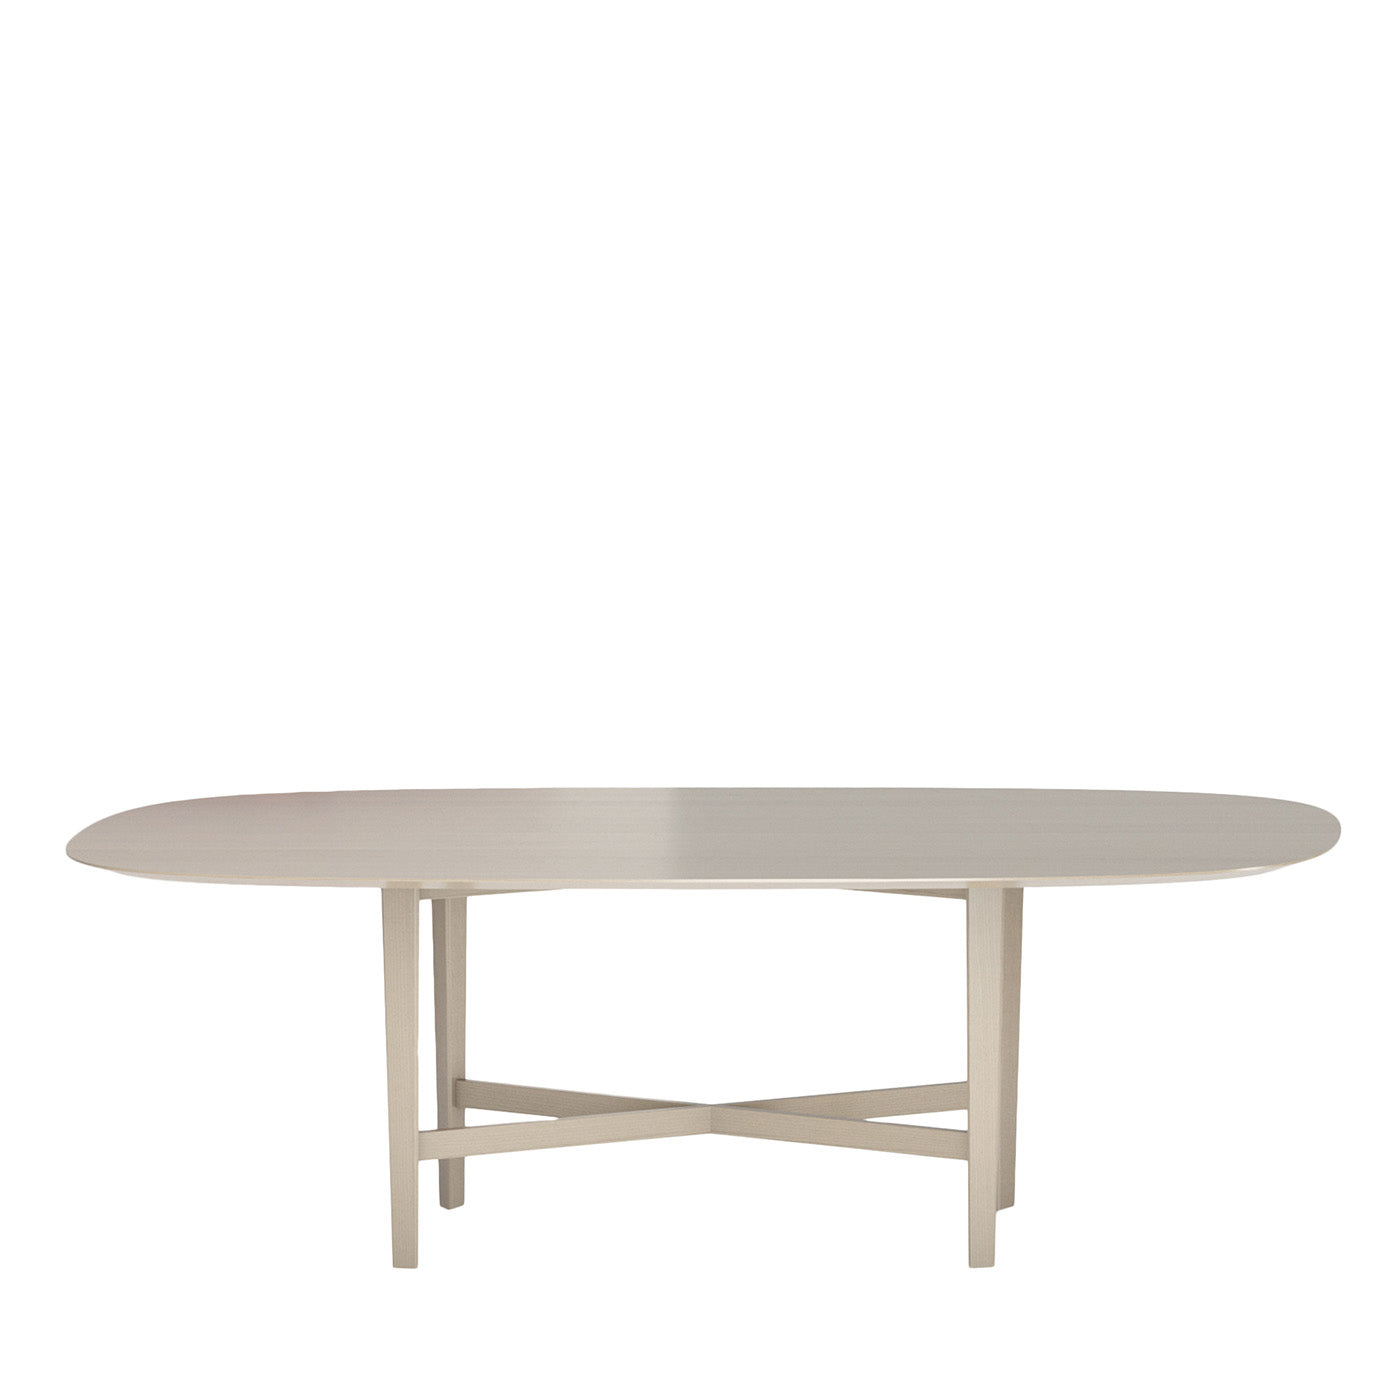 Luigi Filippo Mud Rectangular Table by M. Laudani & M. Romanelli - Main view